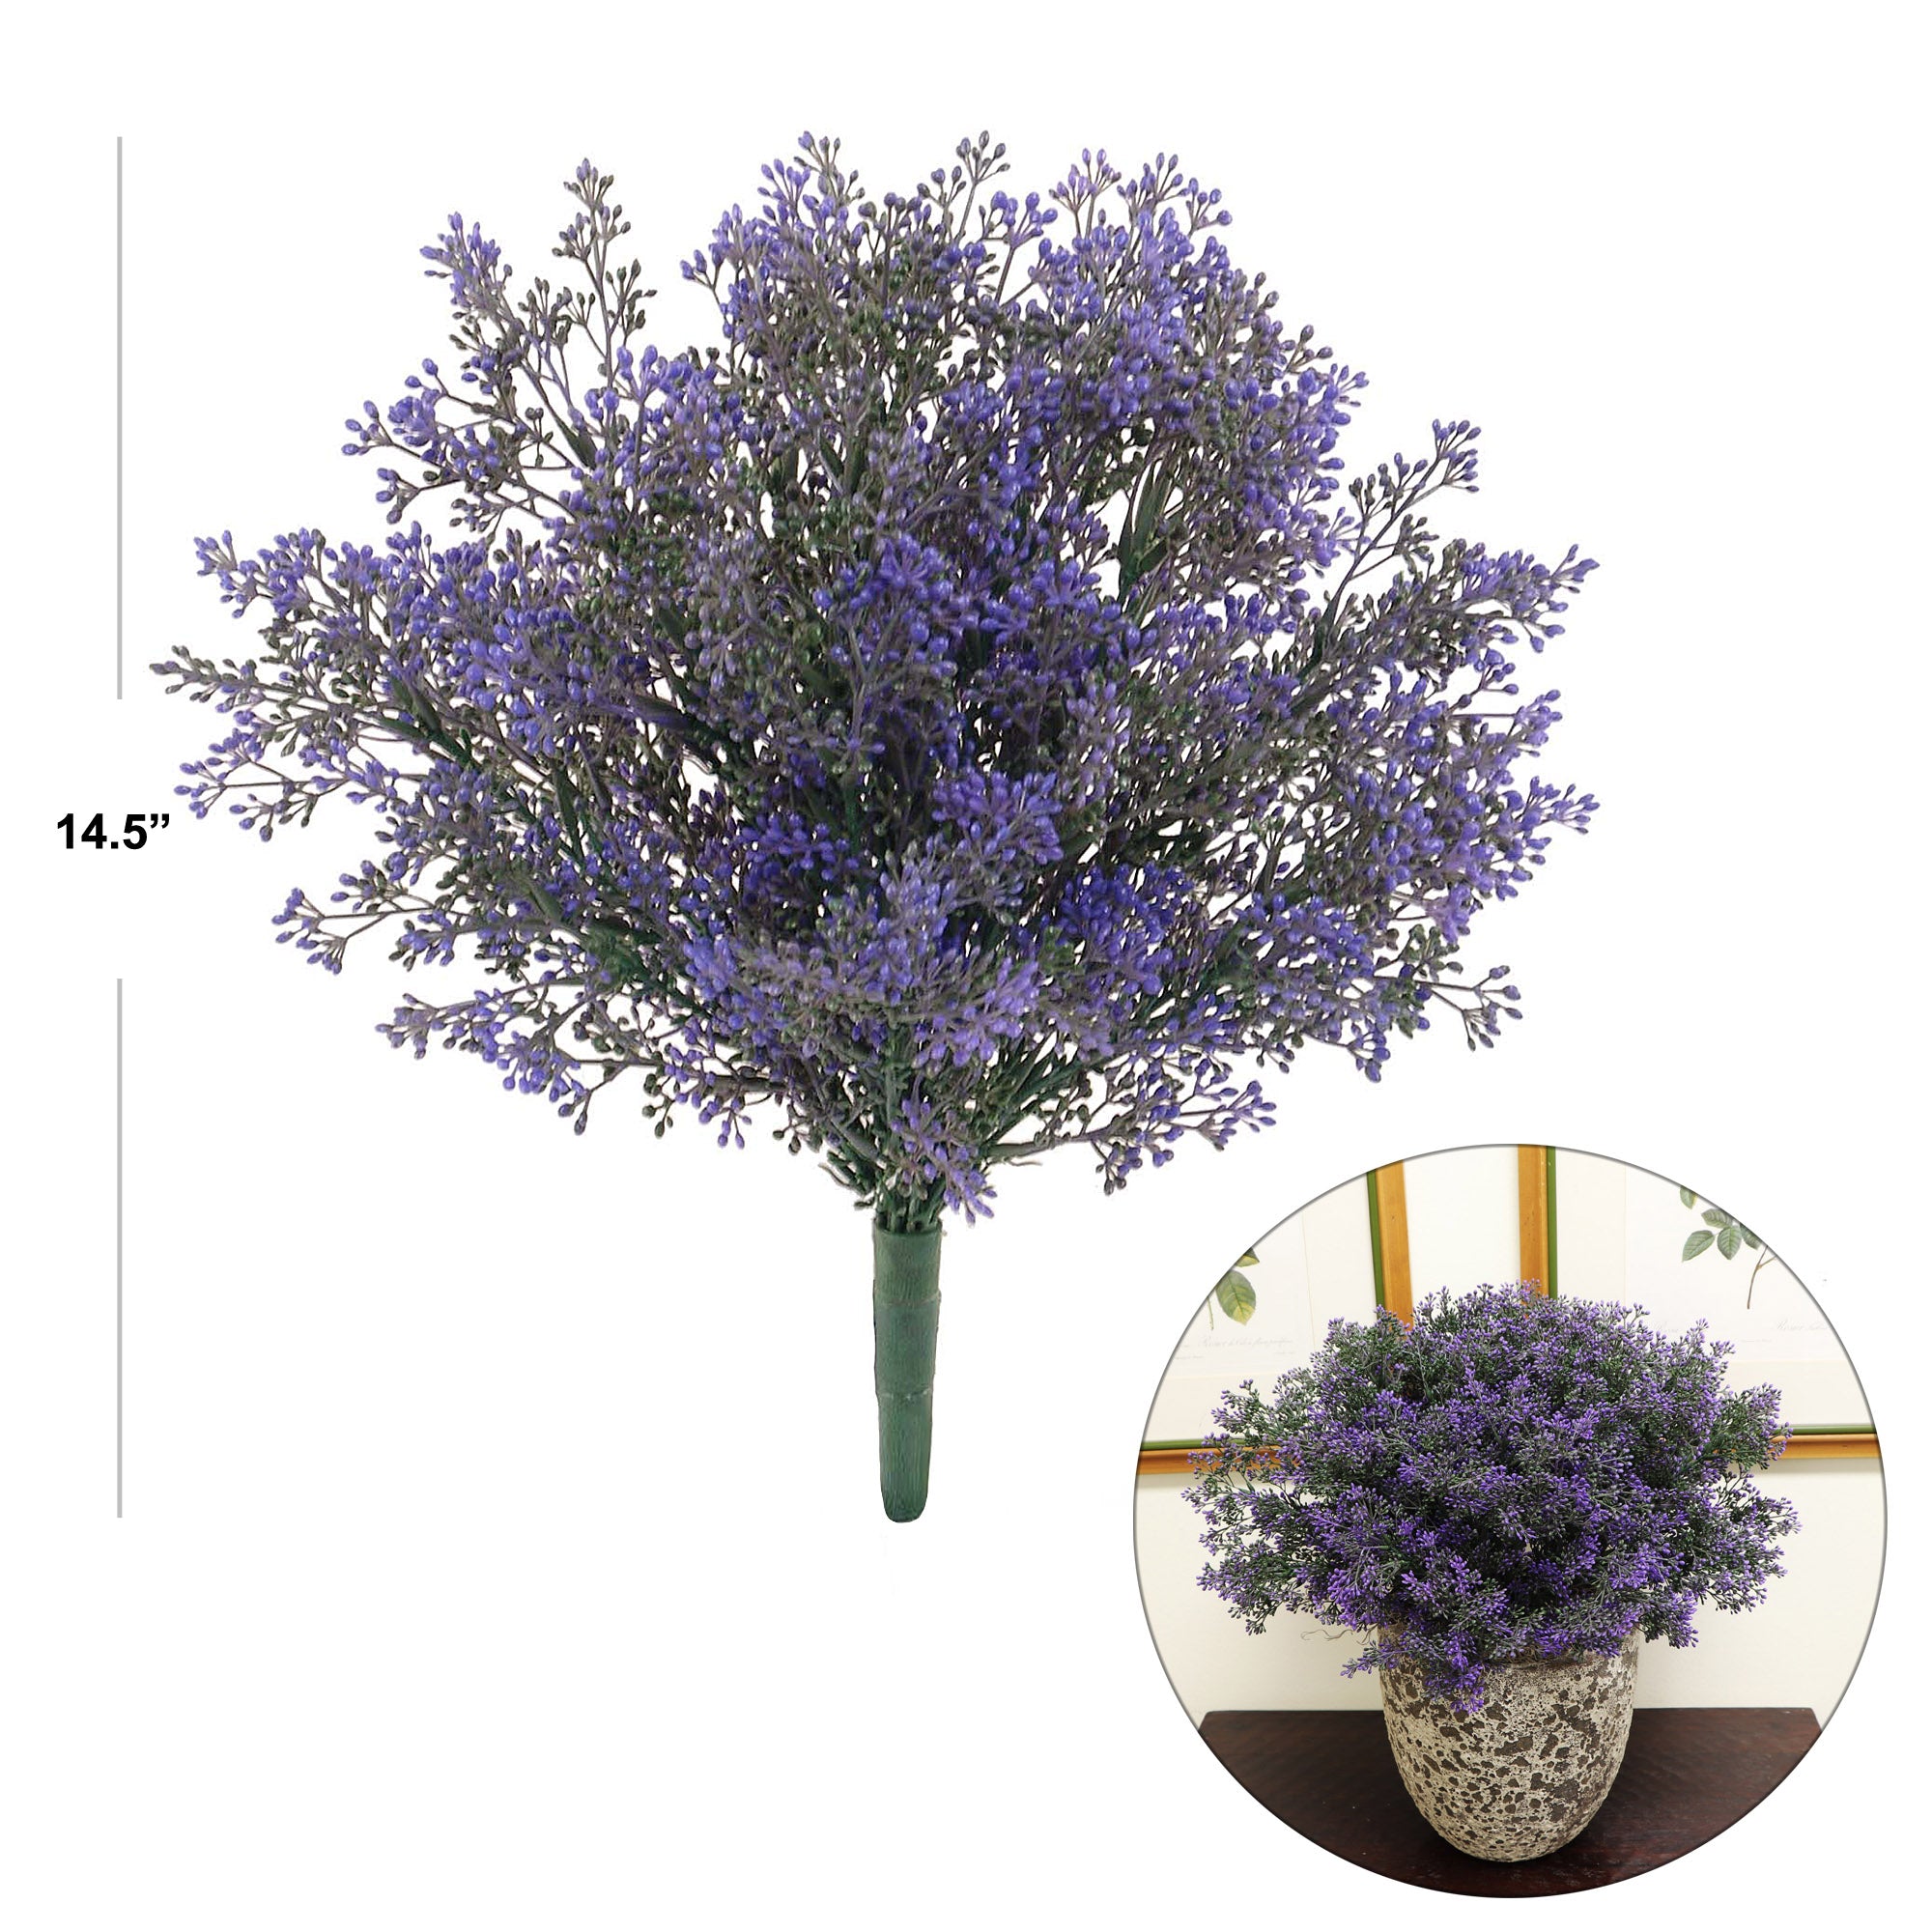 Vibrant 14.5" Purple Boxwood Flower Bush - Lifelike Artificial Plant for Home Decor, Weddings, and Floral Arrangements